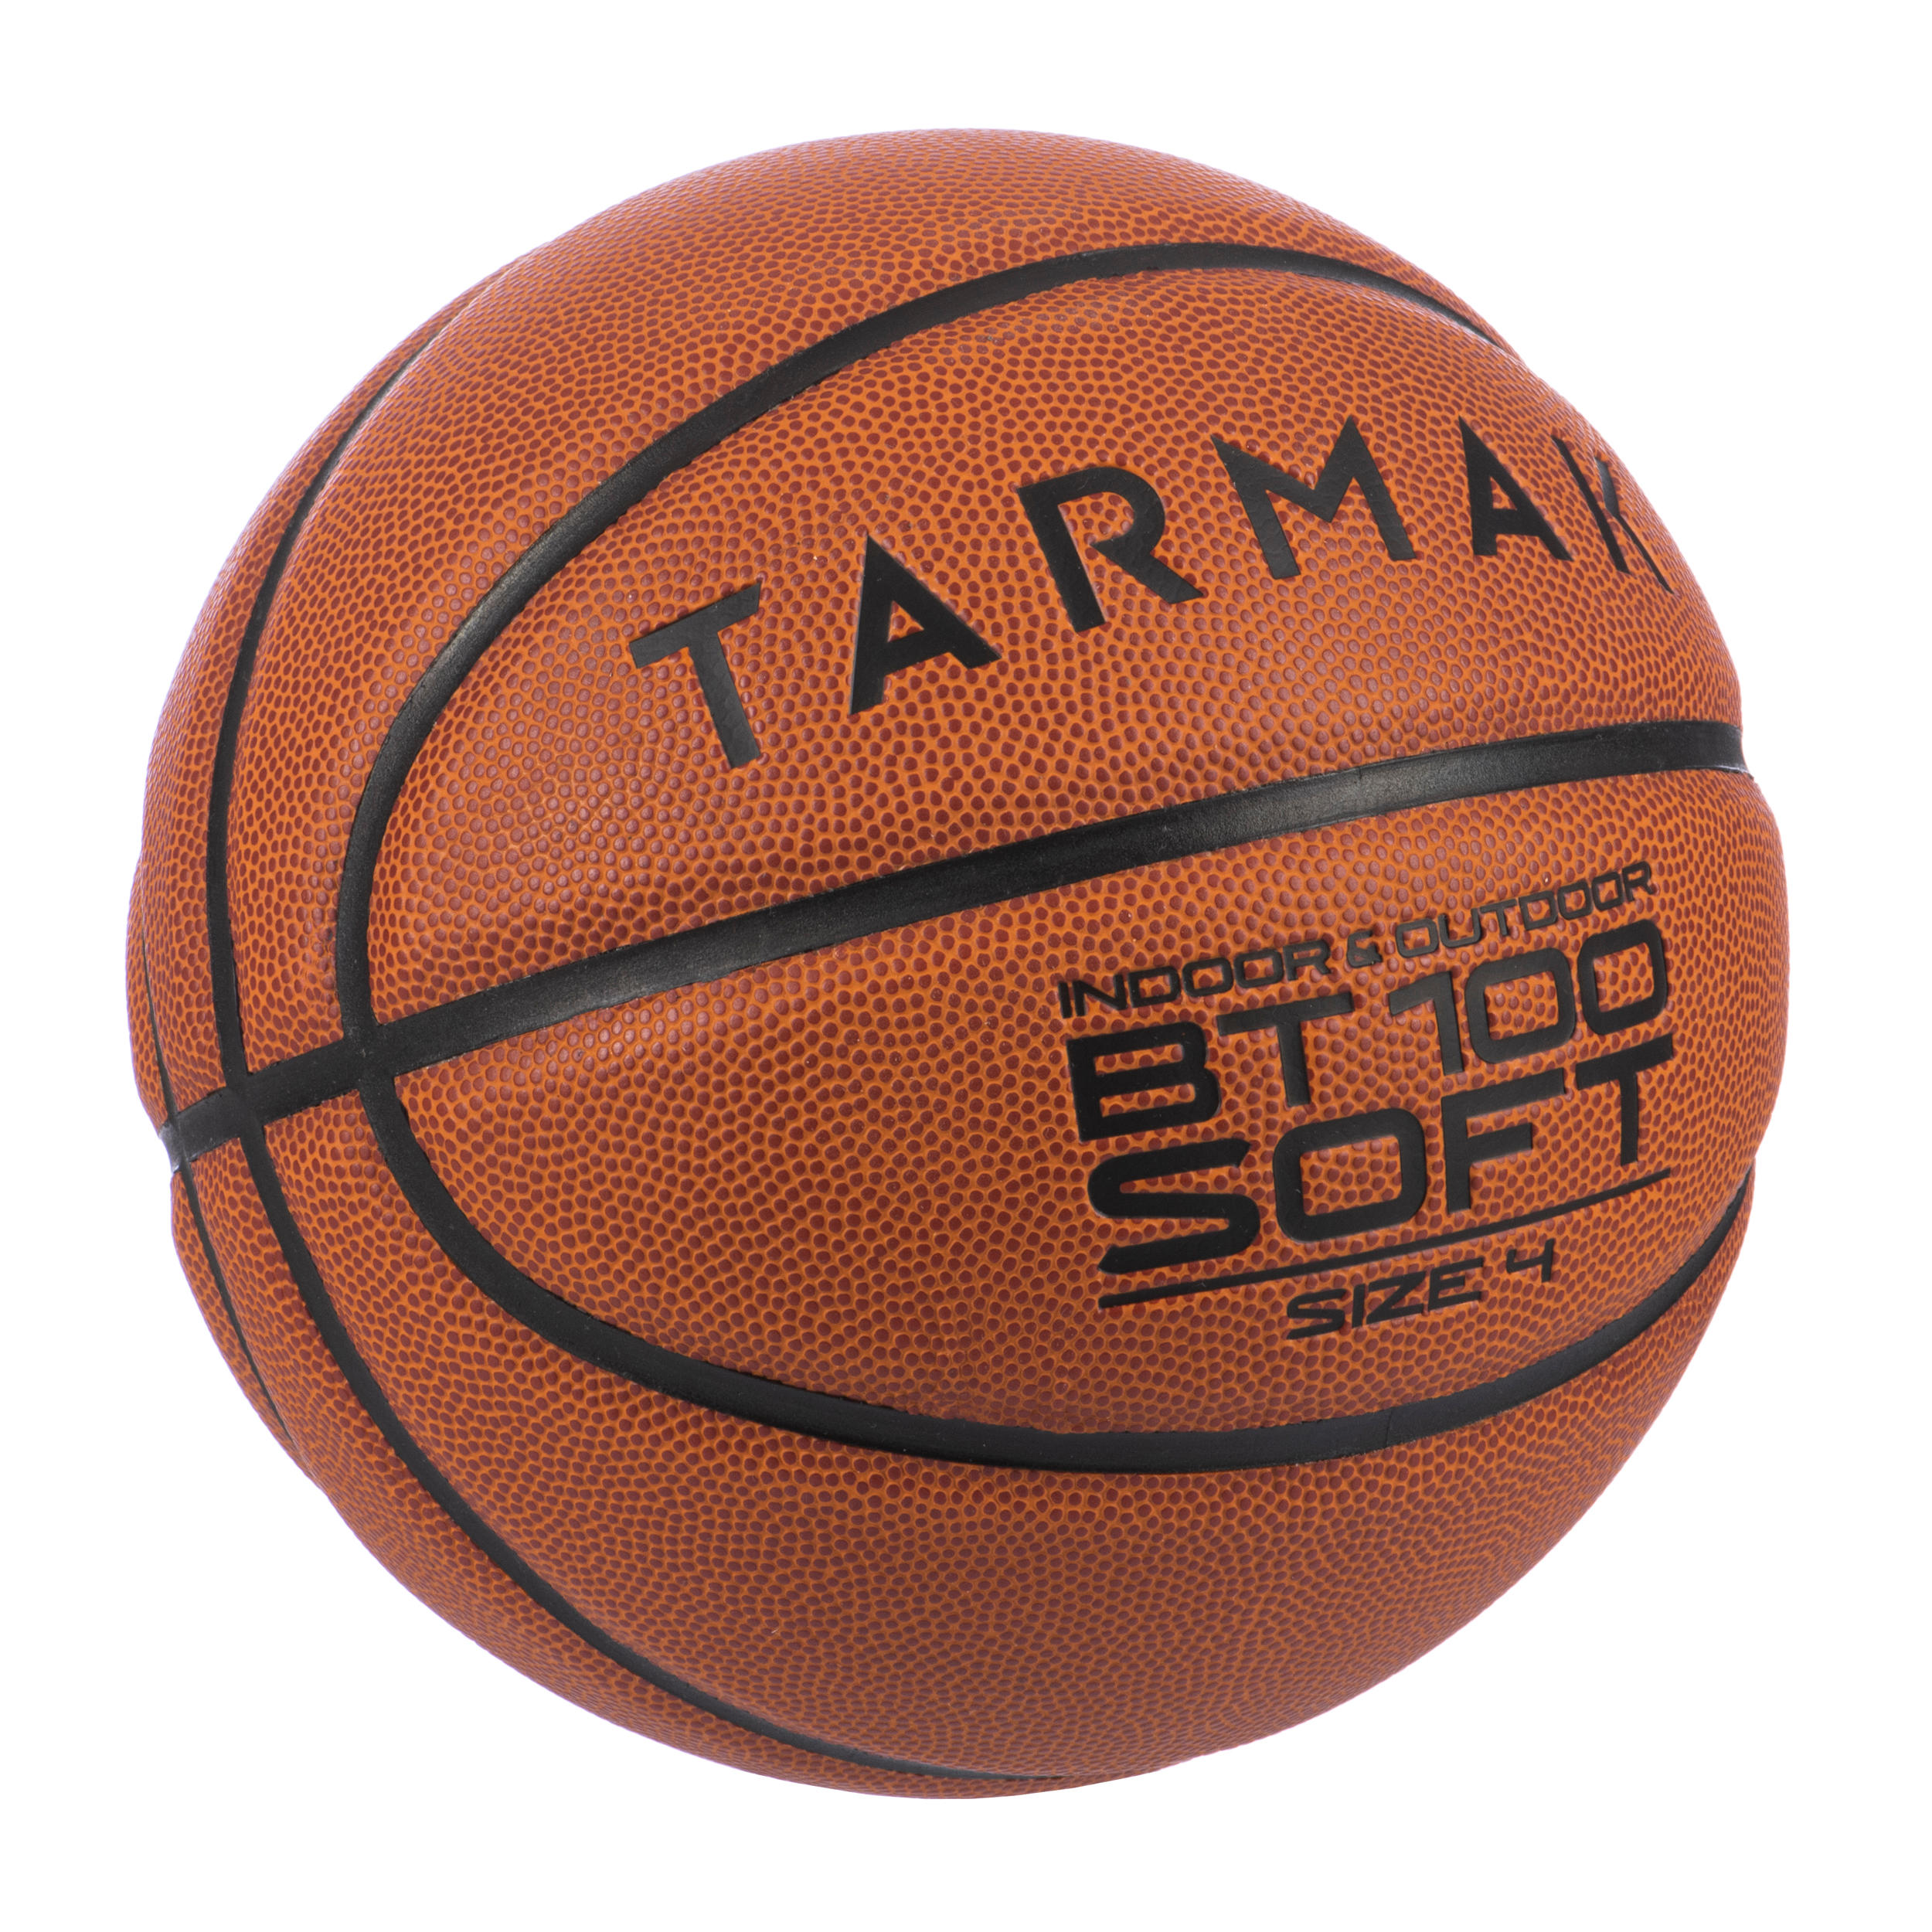 BT100 Kids' Size 4 Beginner Basketball, Under Age 6 - Orange 2/5